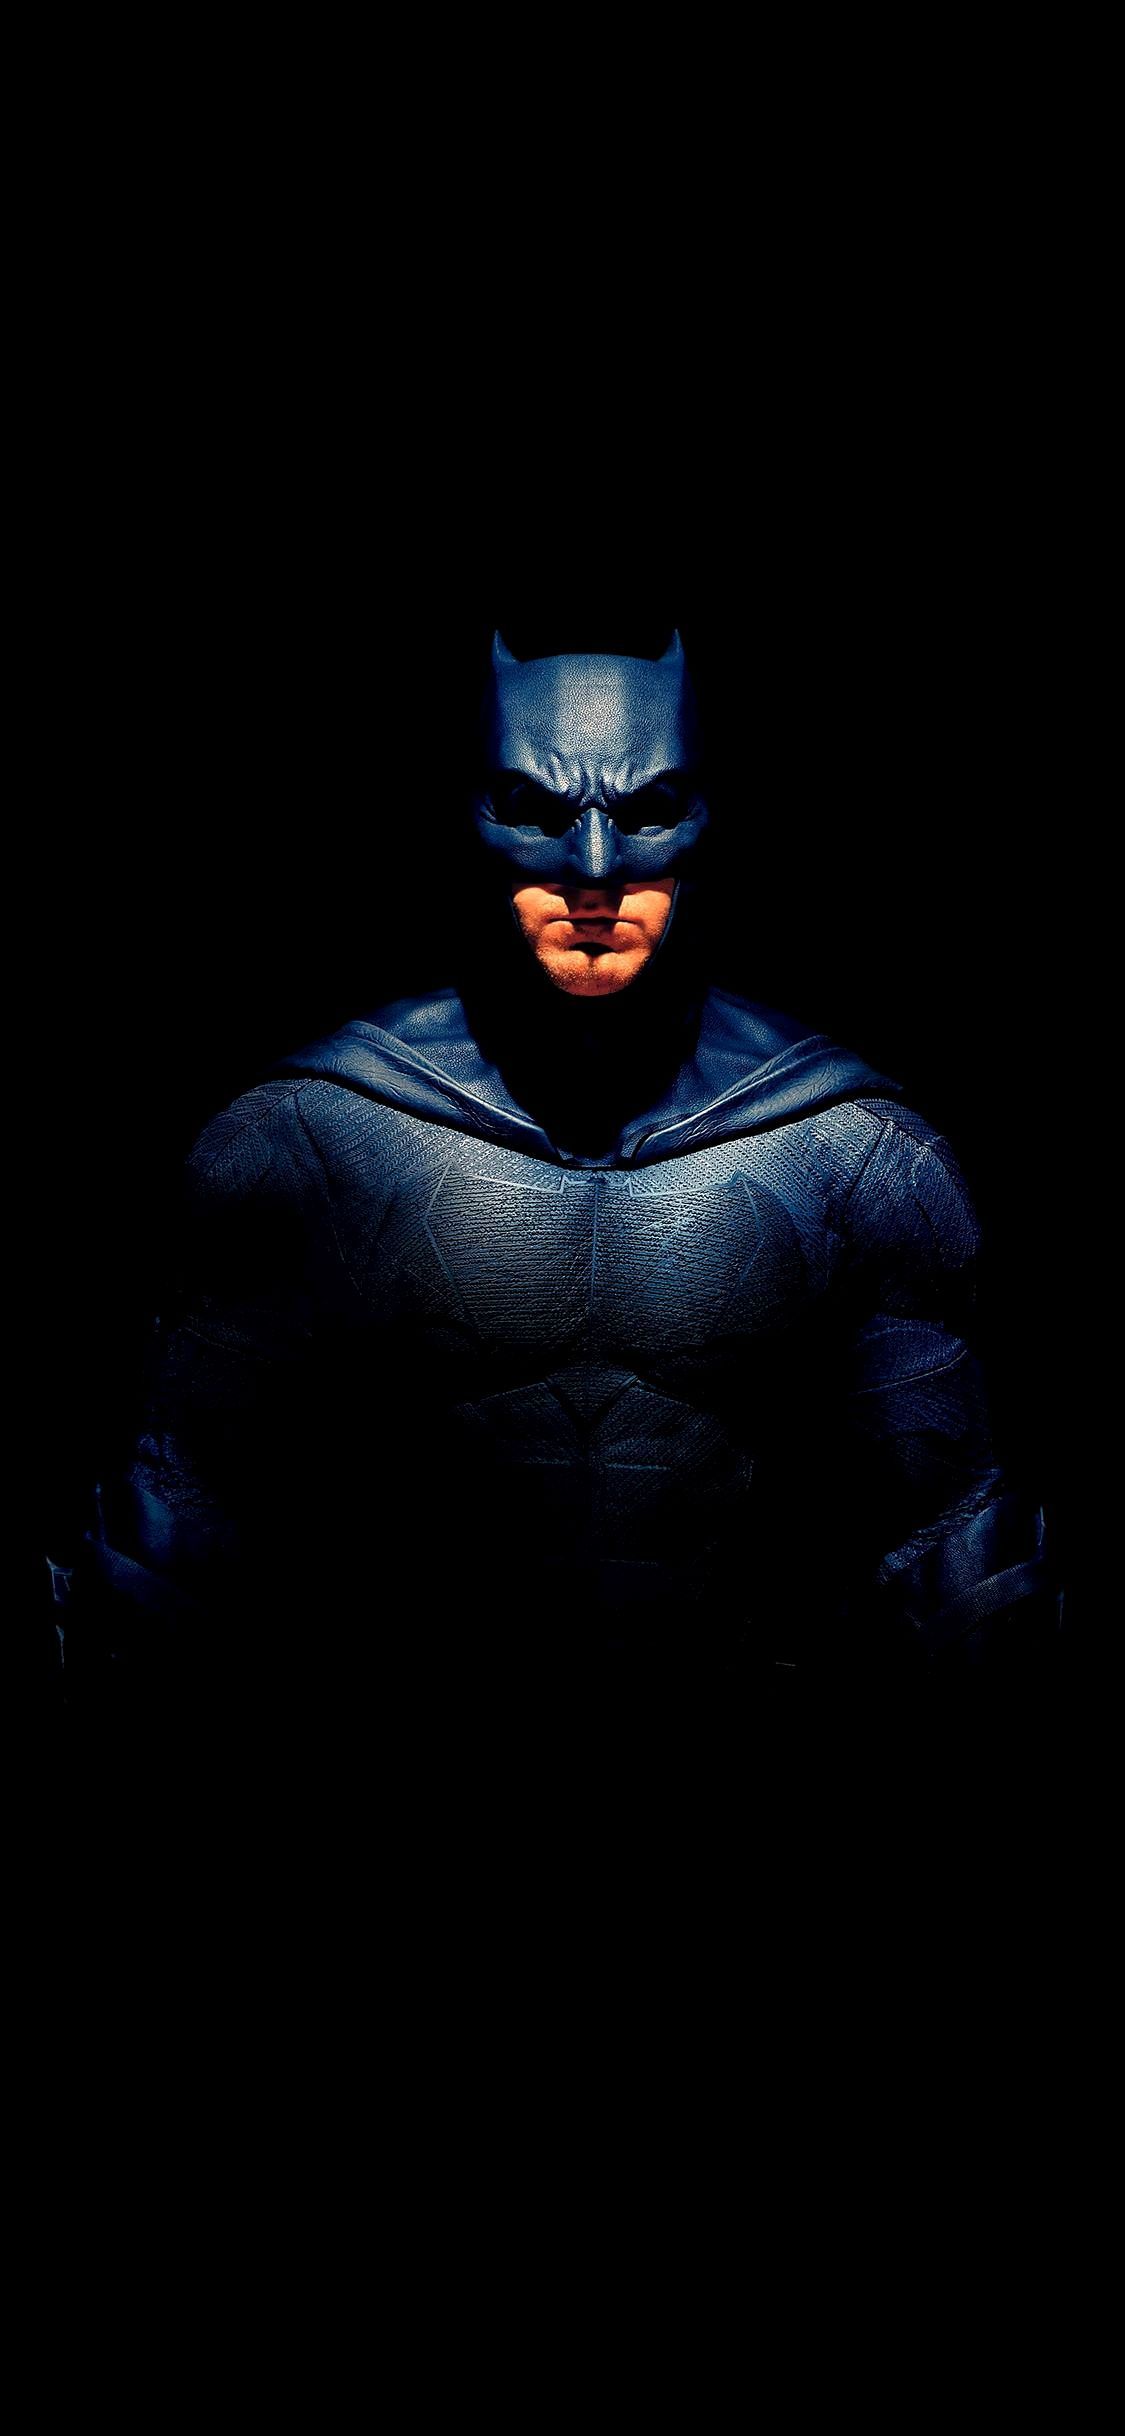 4K Wallpaper Download For Mobile Superhero Gallery di 2020. Batman wallpaper, Batman begins, Batman